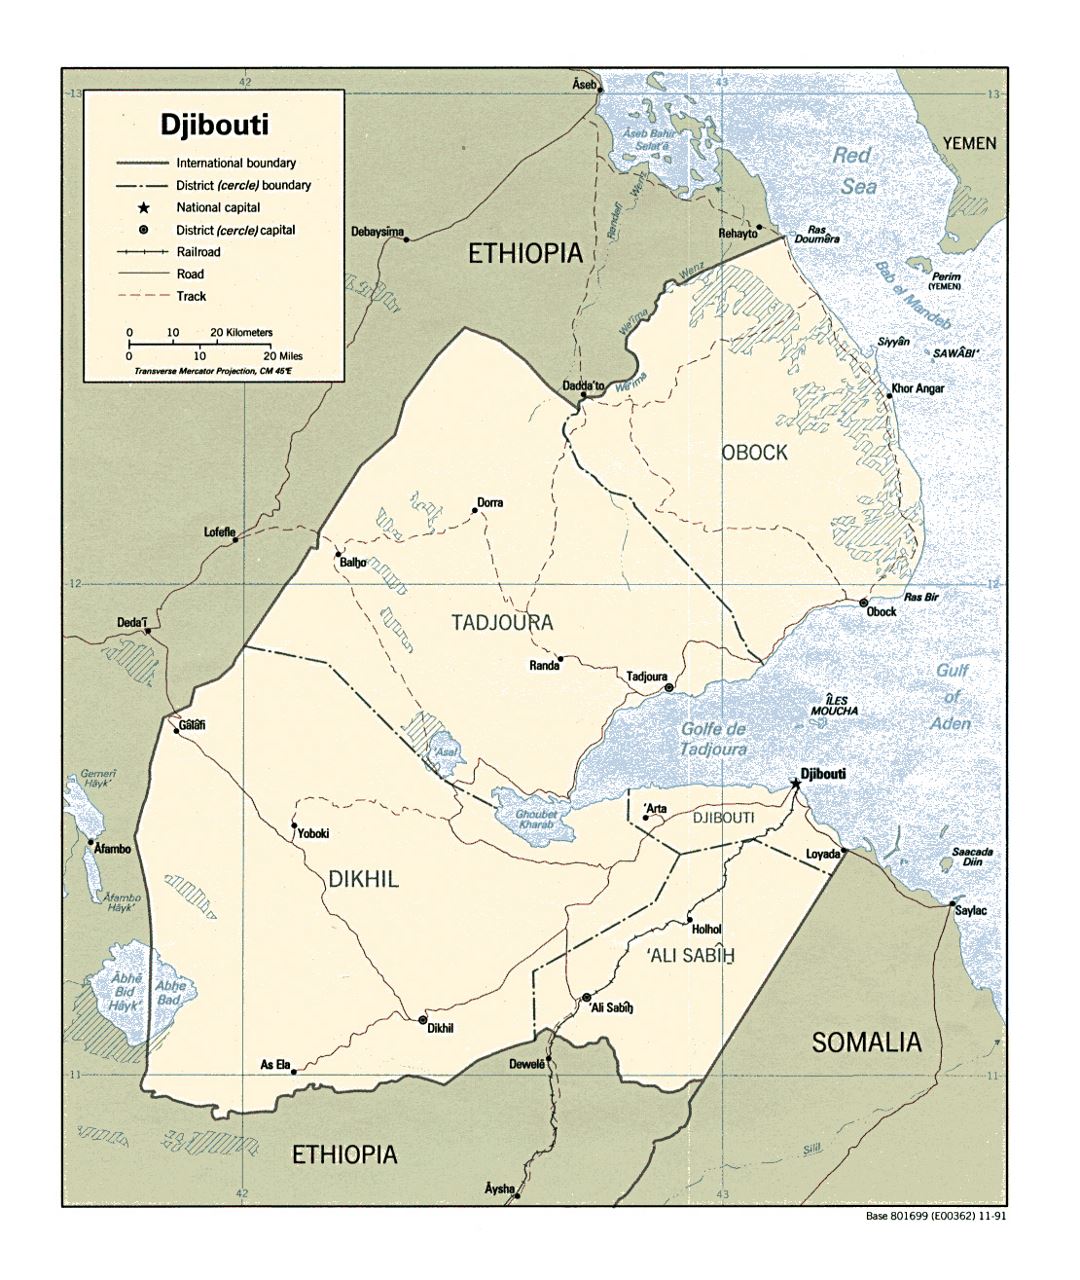 Детальная политическая и административная карта Джибути с дорогами, железными дорогами и крупными городами - 1991